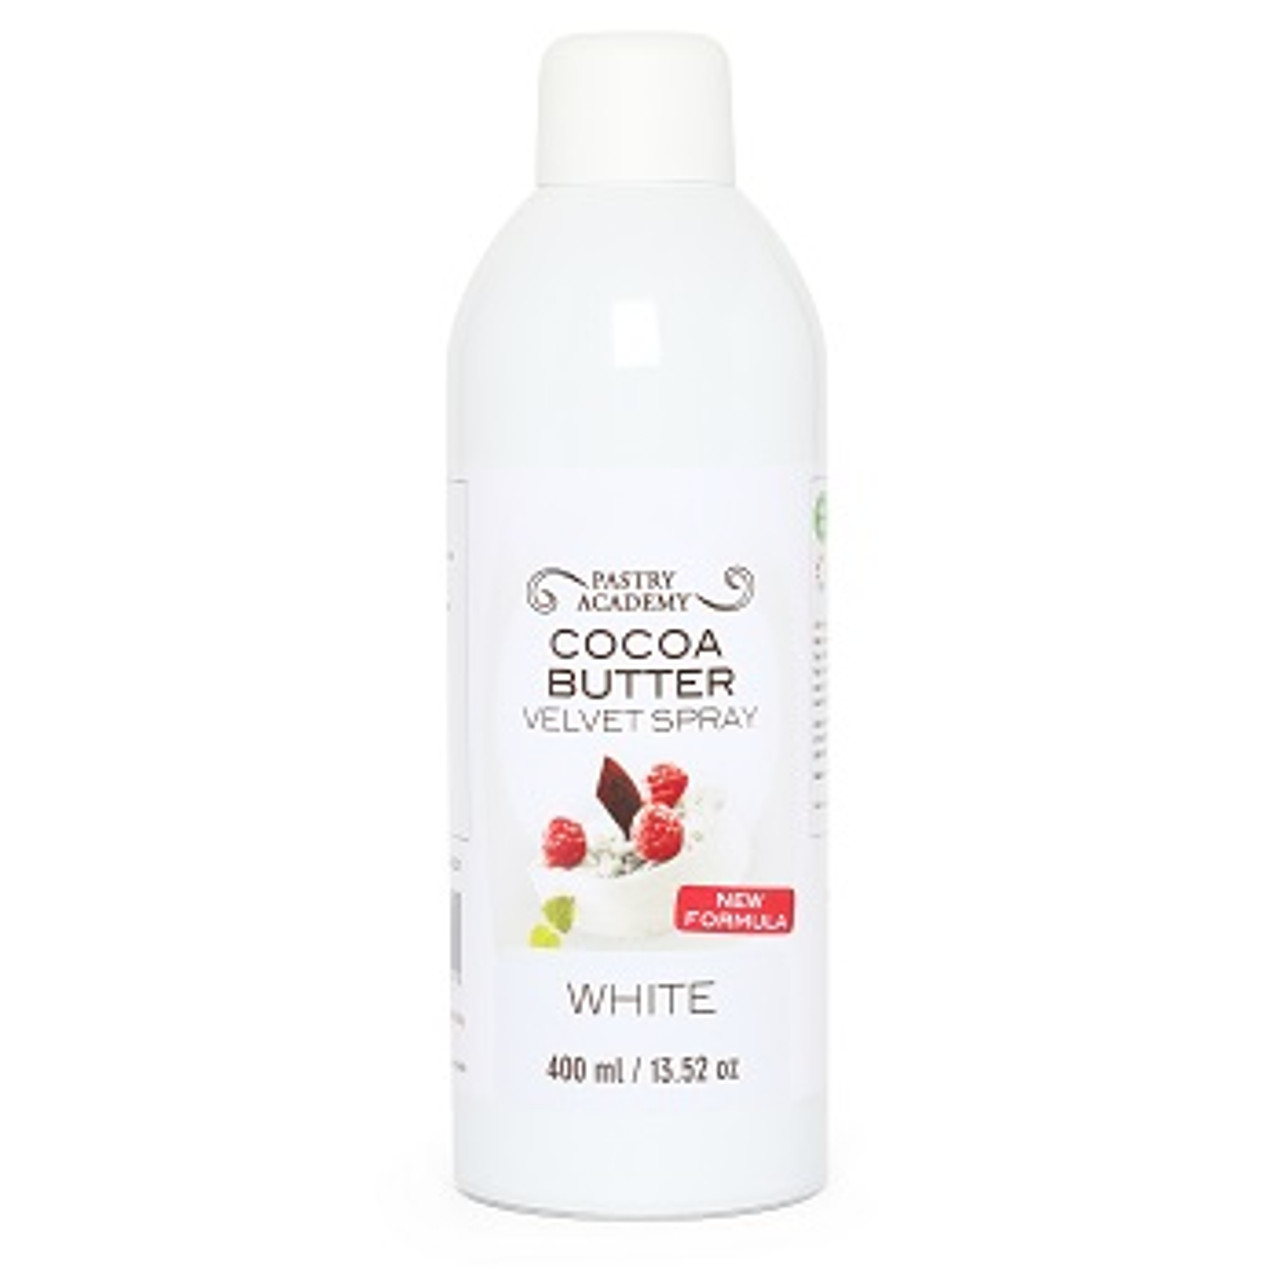 PASTRY ACADEMY WHITE COCOA BUTTER VELVET SPRAY 400ml